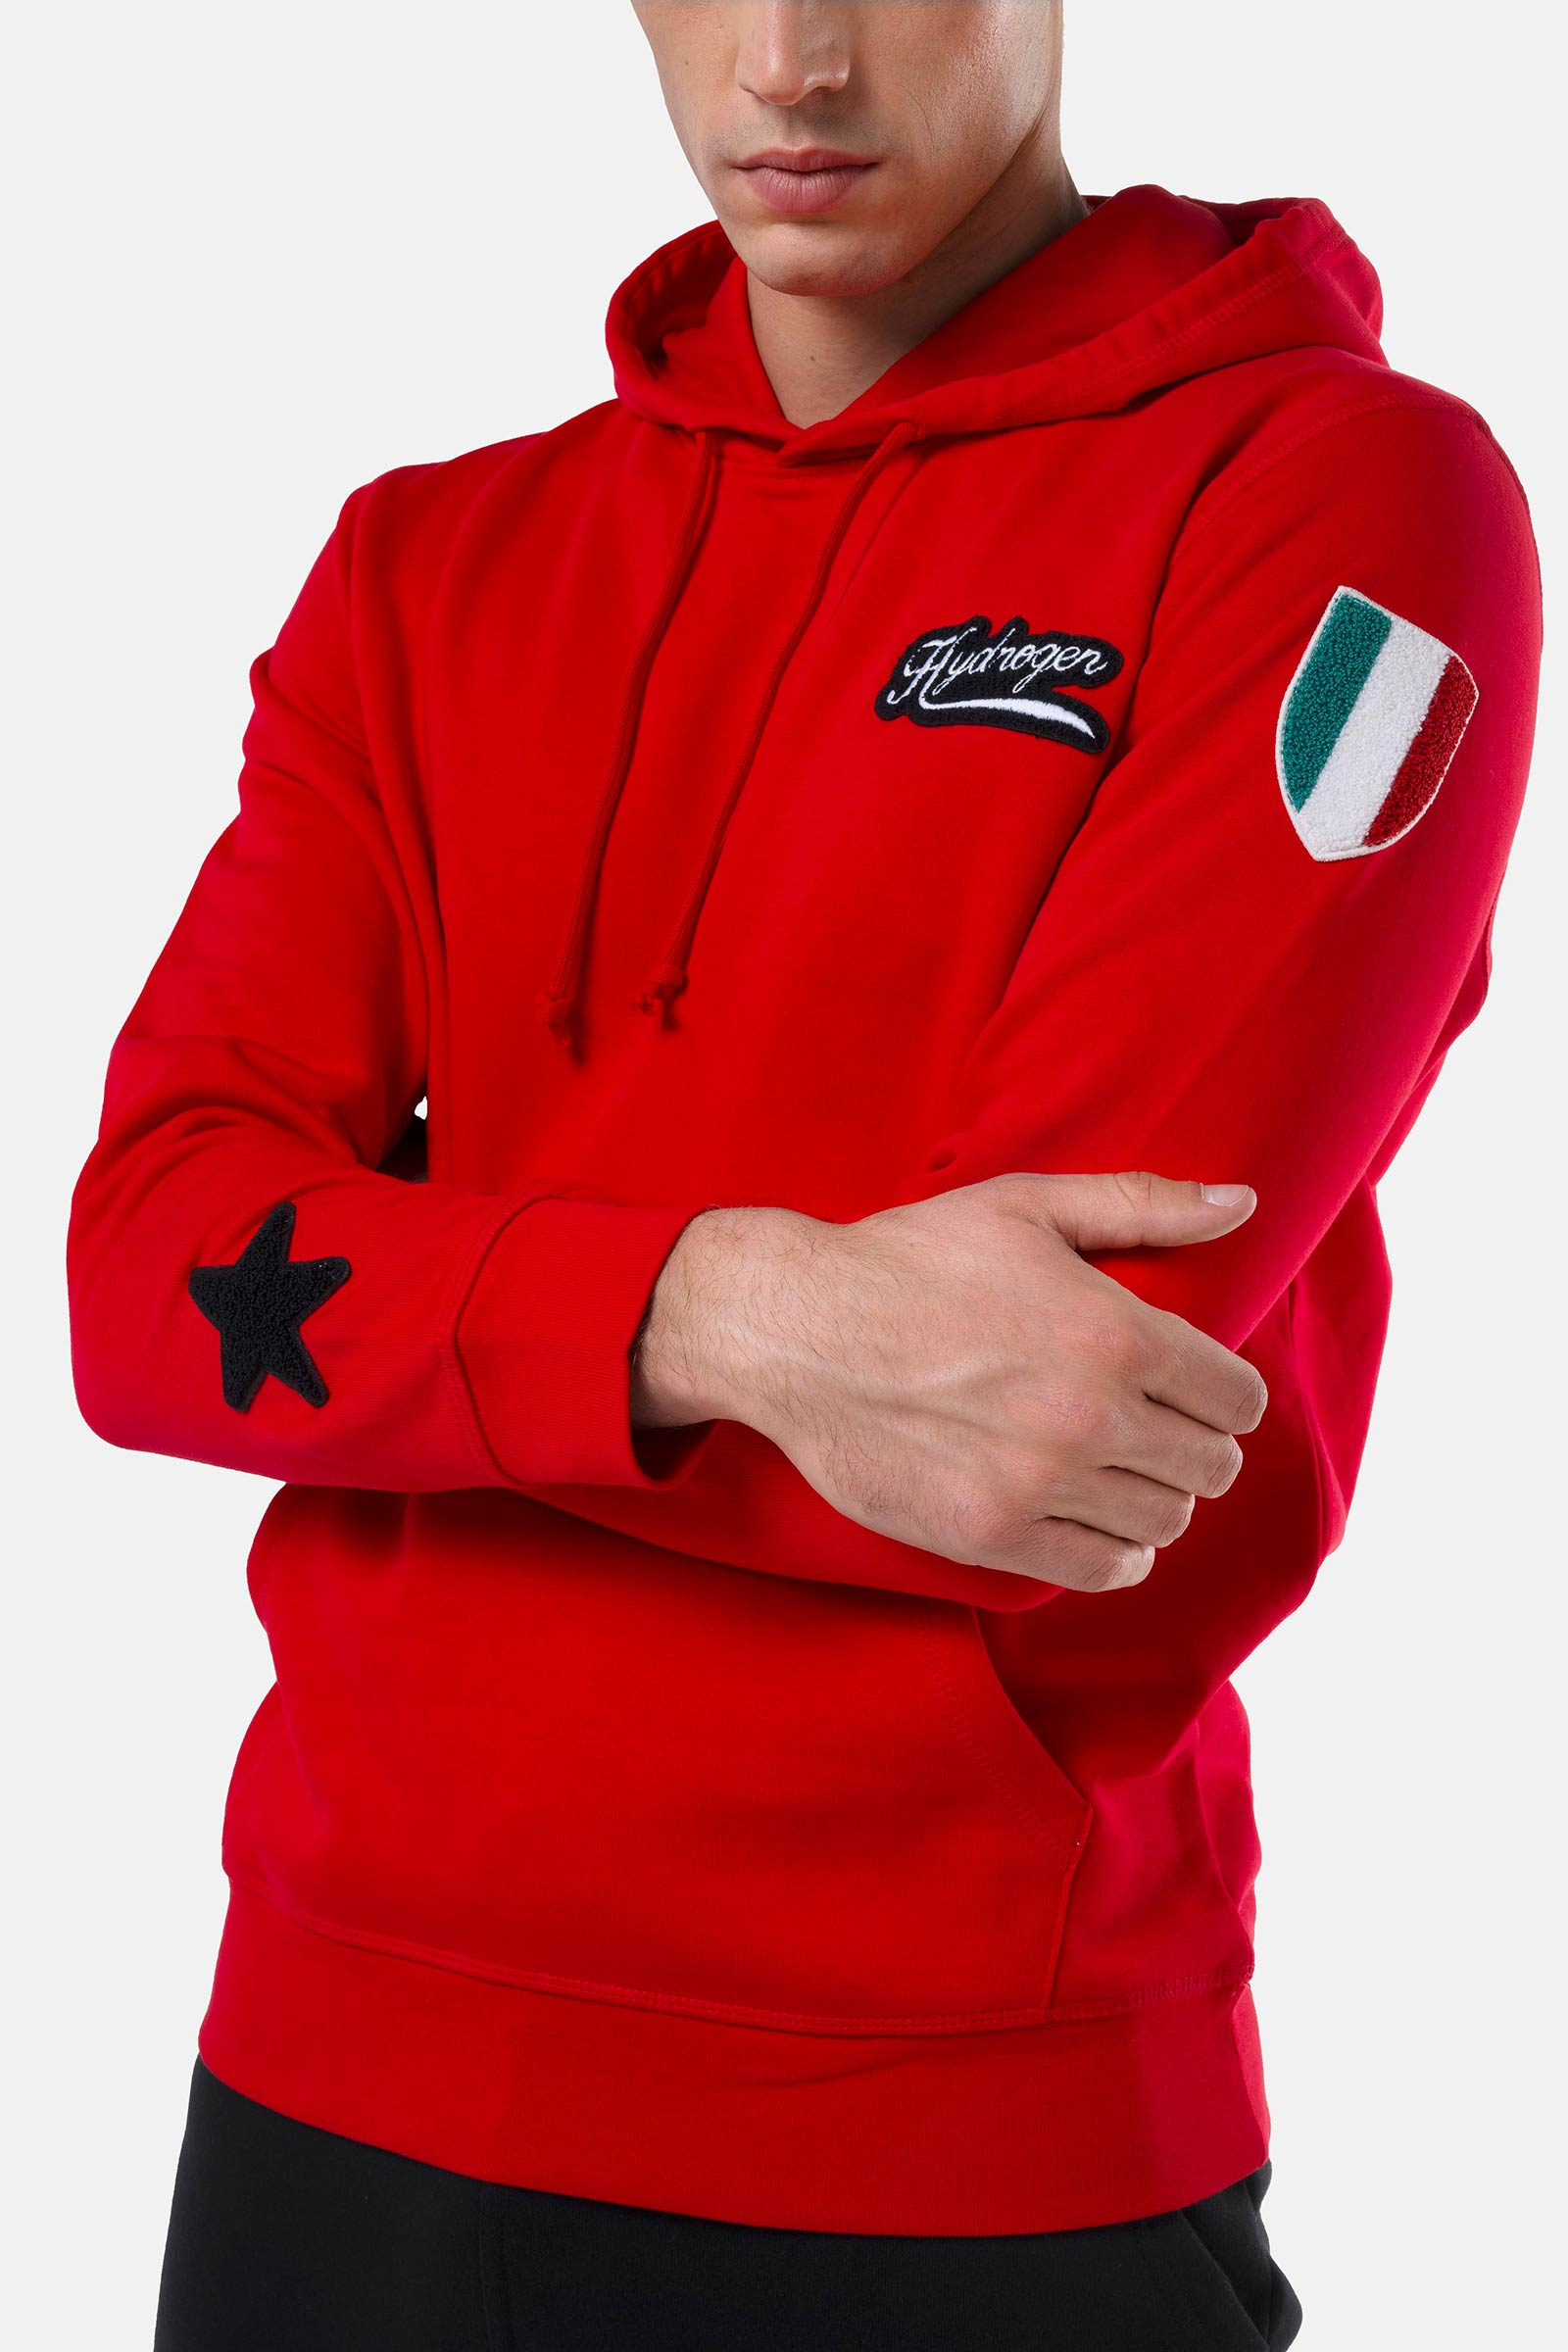 SHIELD HOODIE - RED - Hydrogen - Luxury Sportwear